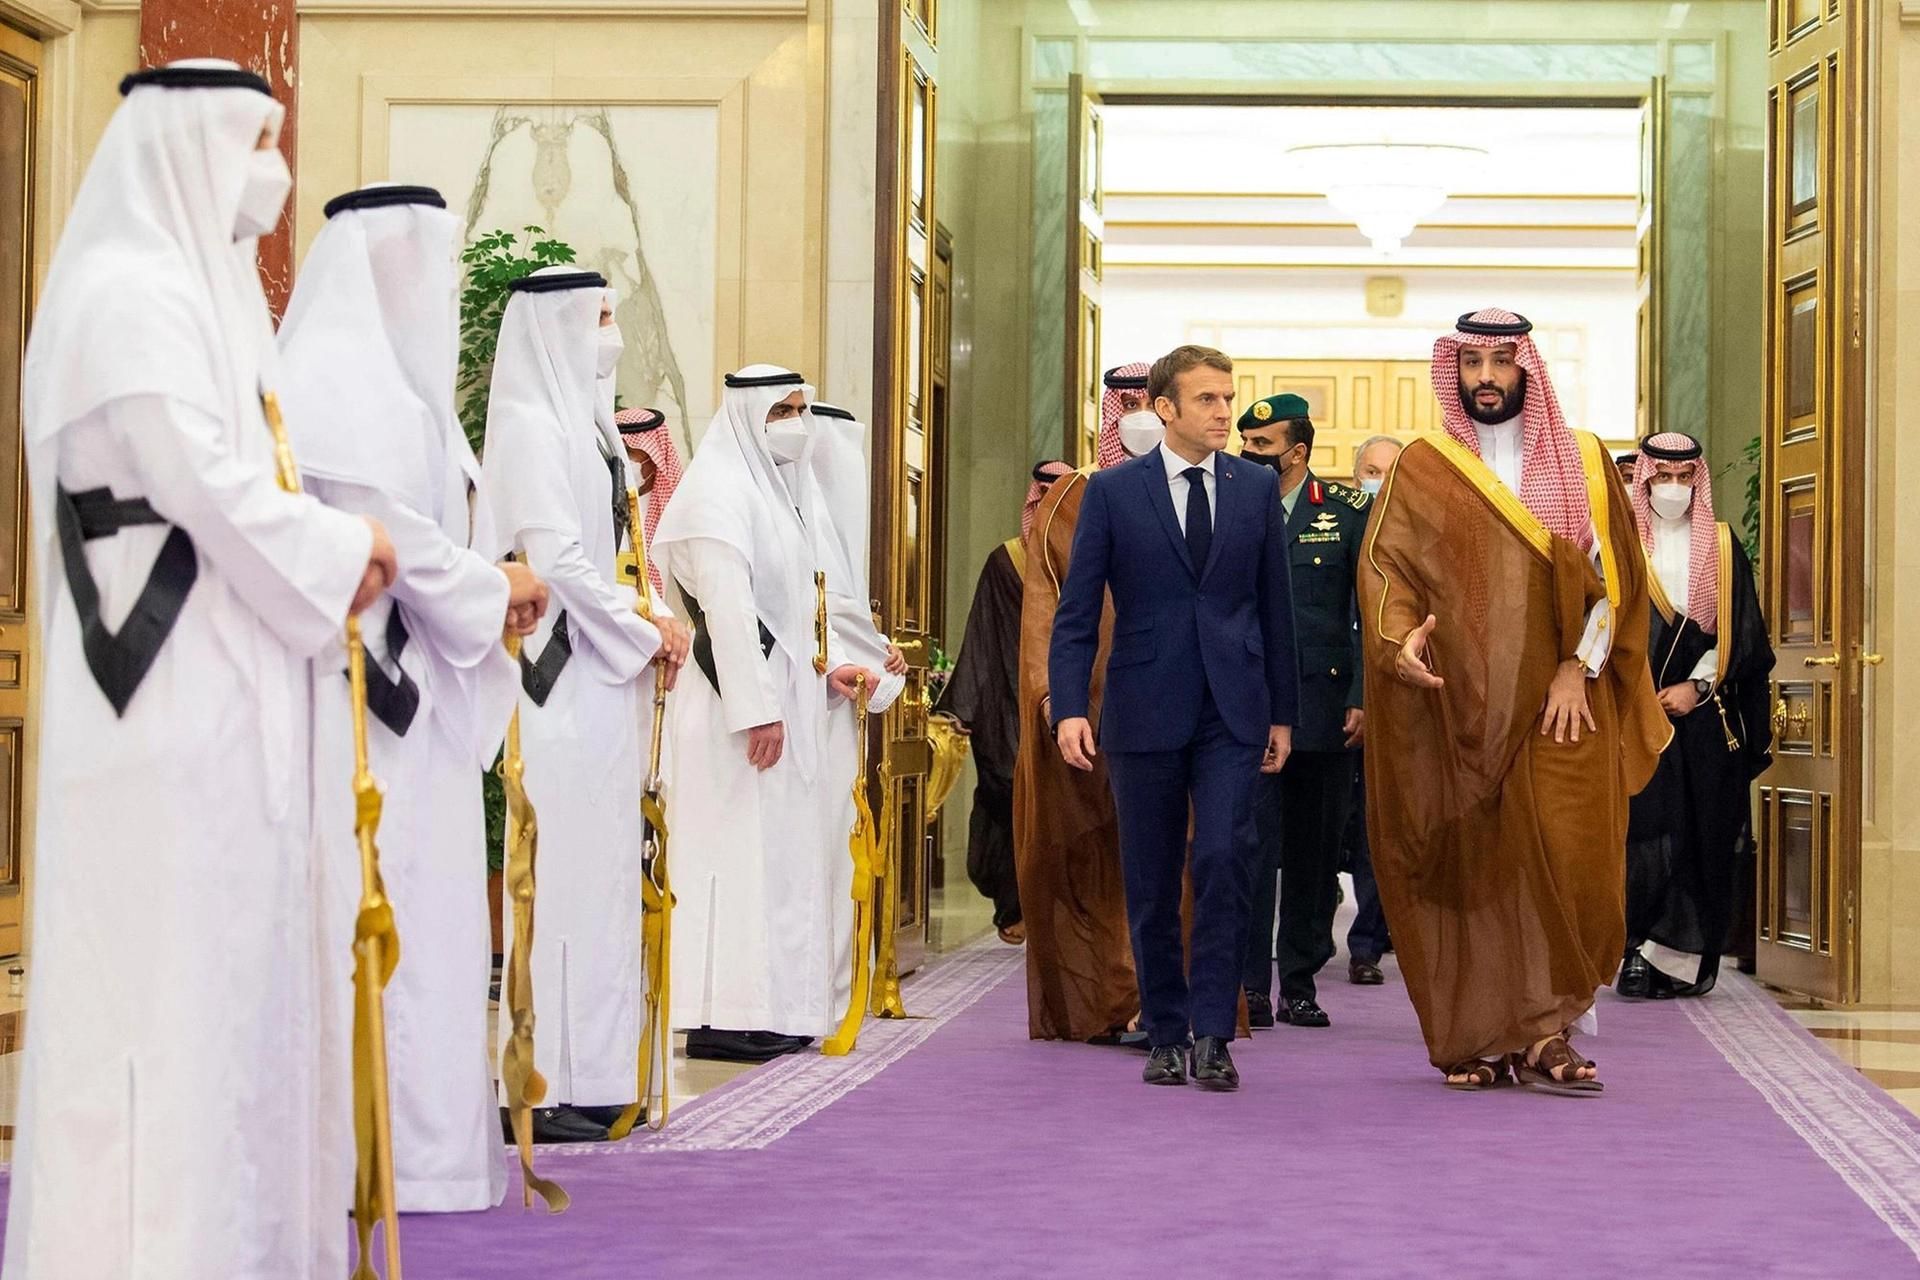 נשיא צרפת עמנואל מקרון ויורש העצר הסעודי מוחמד בן סלמאן אל סעוד בארמון המלכותי בג'דה ב-4 בדצמבר

צילום: Abaca Press/Alamy


